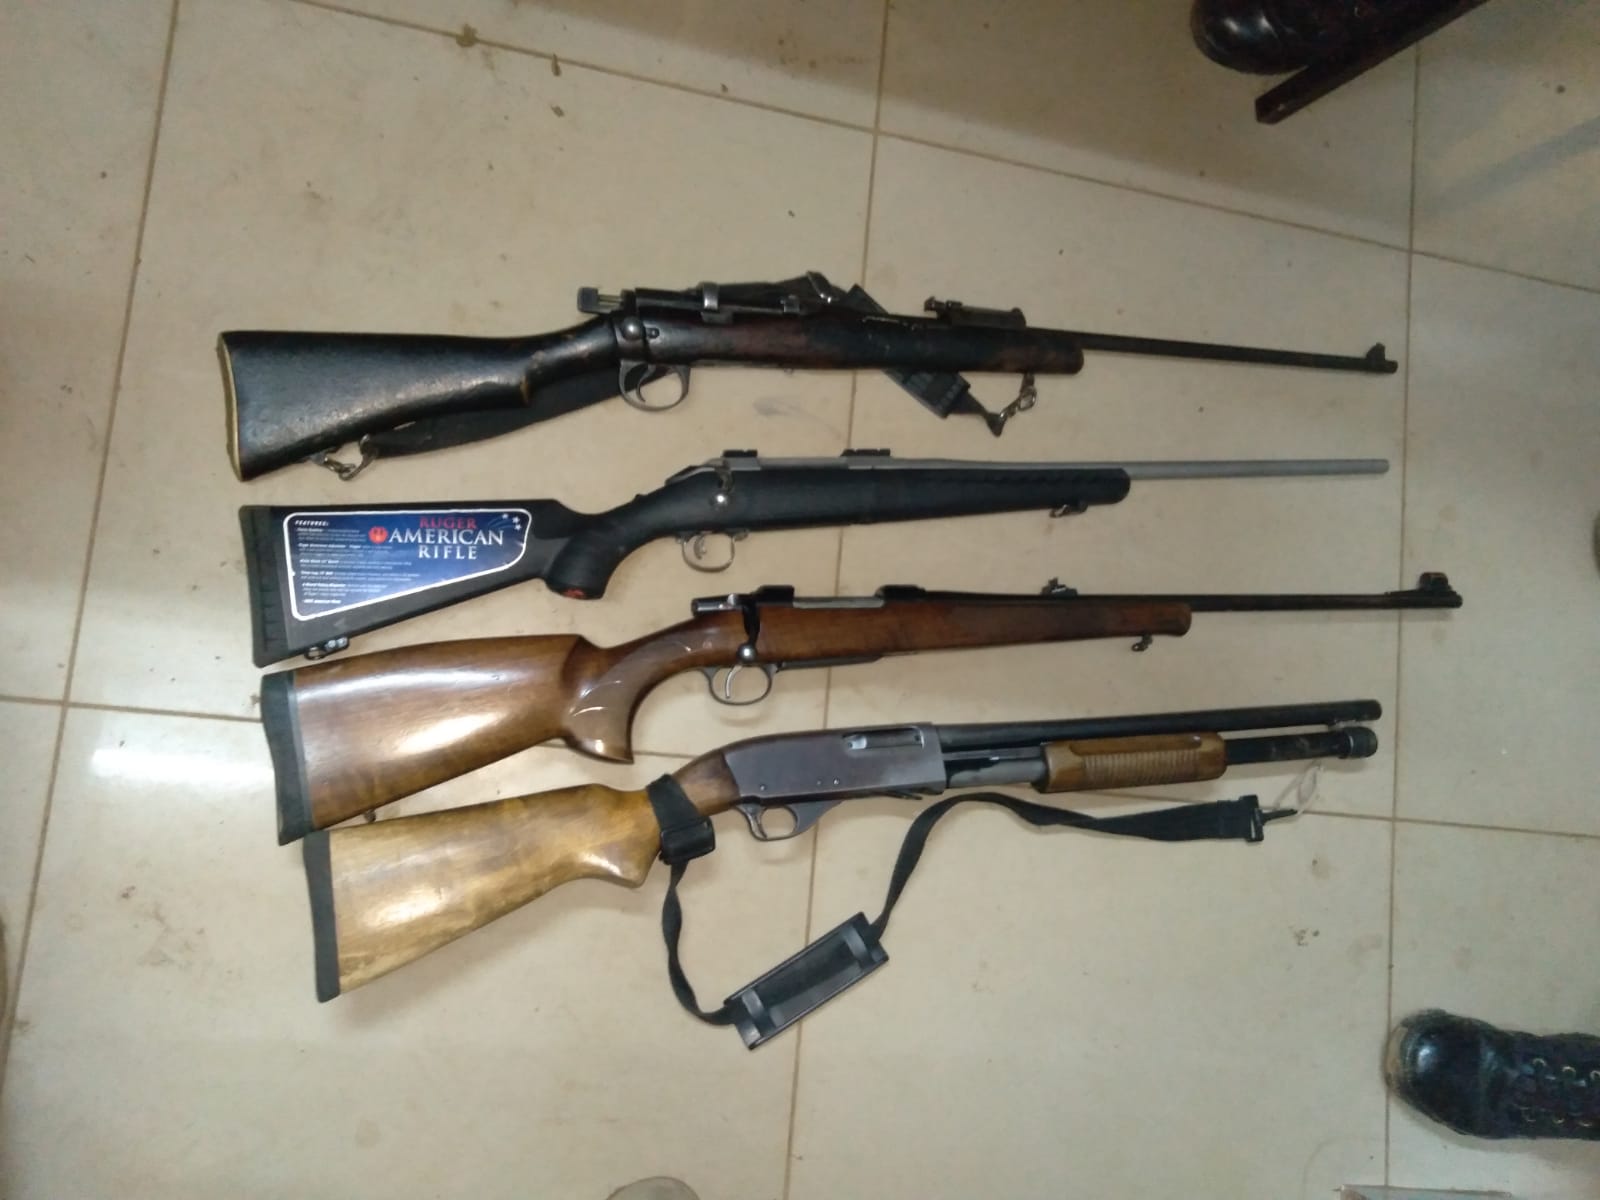 Four firearms seized in Ematimatolo